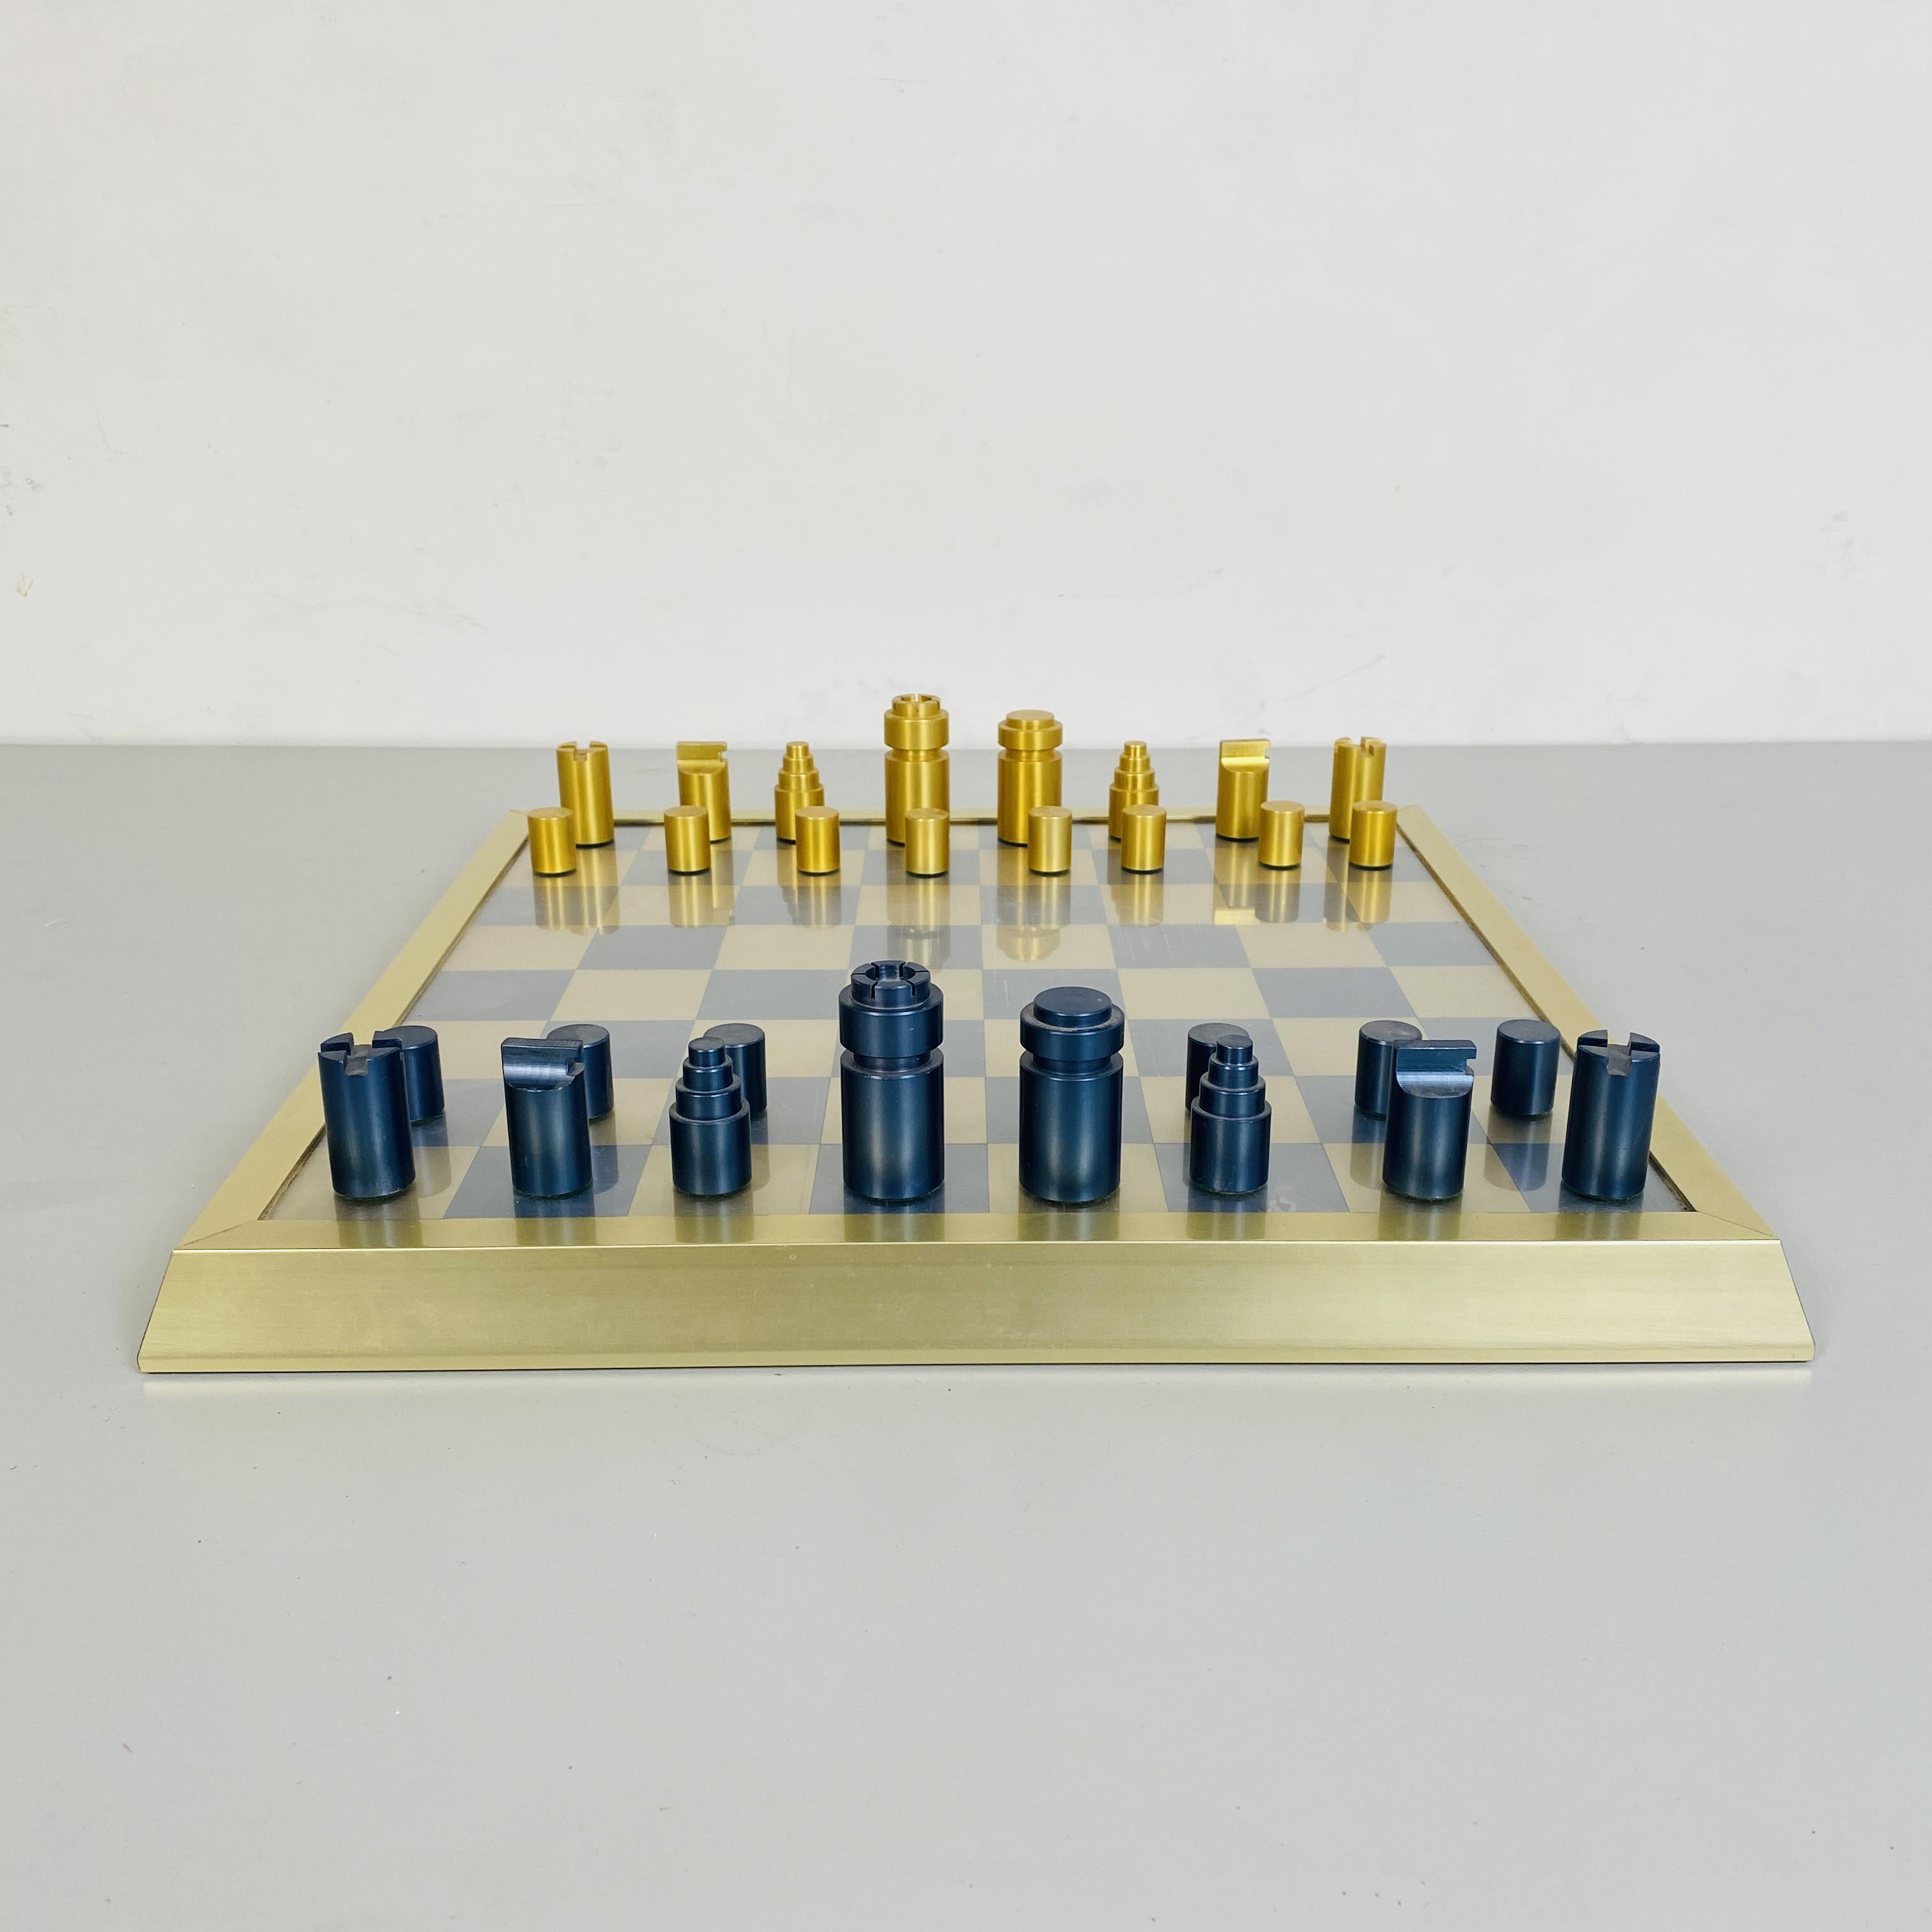 Échiquier professionnel avec pions, années 1980
Échiquier professionnel en métal, bois et plastique. Le plateau de jeu mesure 37,5 x 37,5 cm et la boîte individuelle mesure 4,37 x 4,37 cm. Les pièces sont en bois peint en or et bleu métallique et